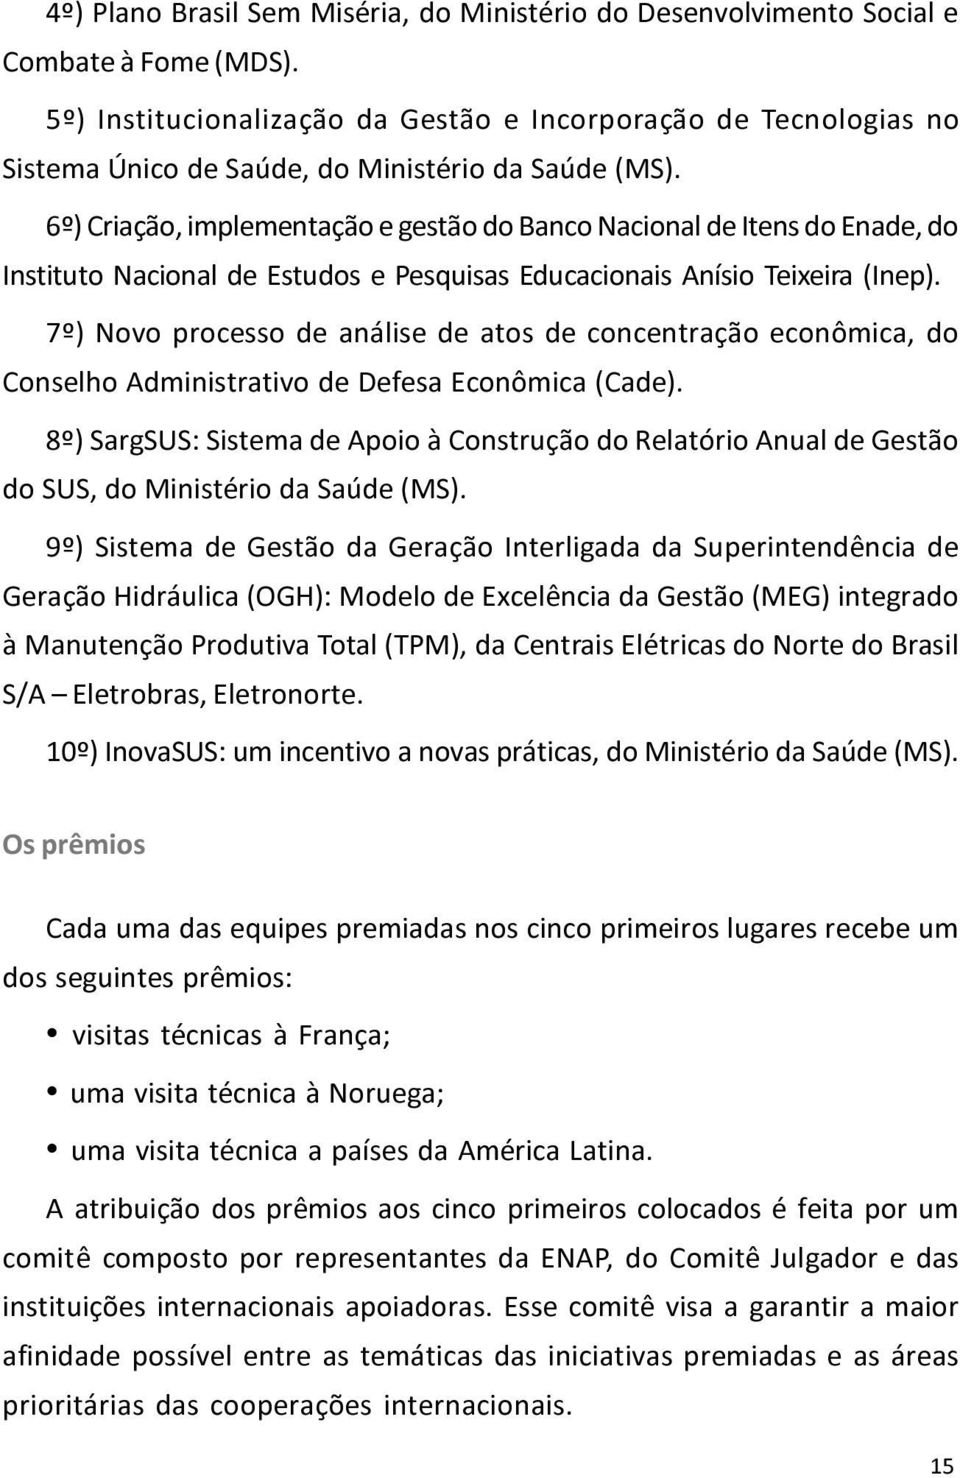 6º) Criação, implementação e gestão do Banco Nacional de Itens do Enade, do Instituto Nacional de Estudos e Pesquisas Educacionais Anísio Teixeira (Inep).